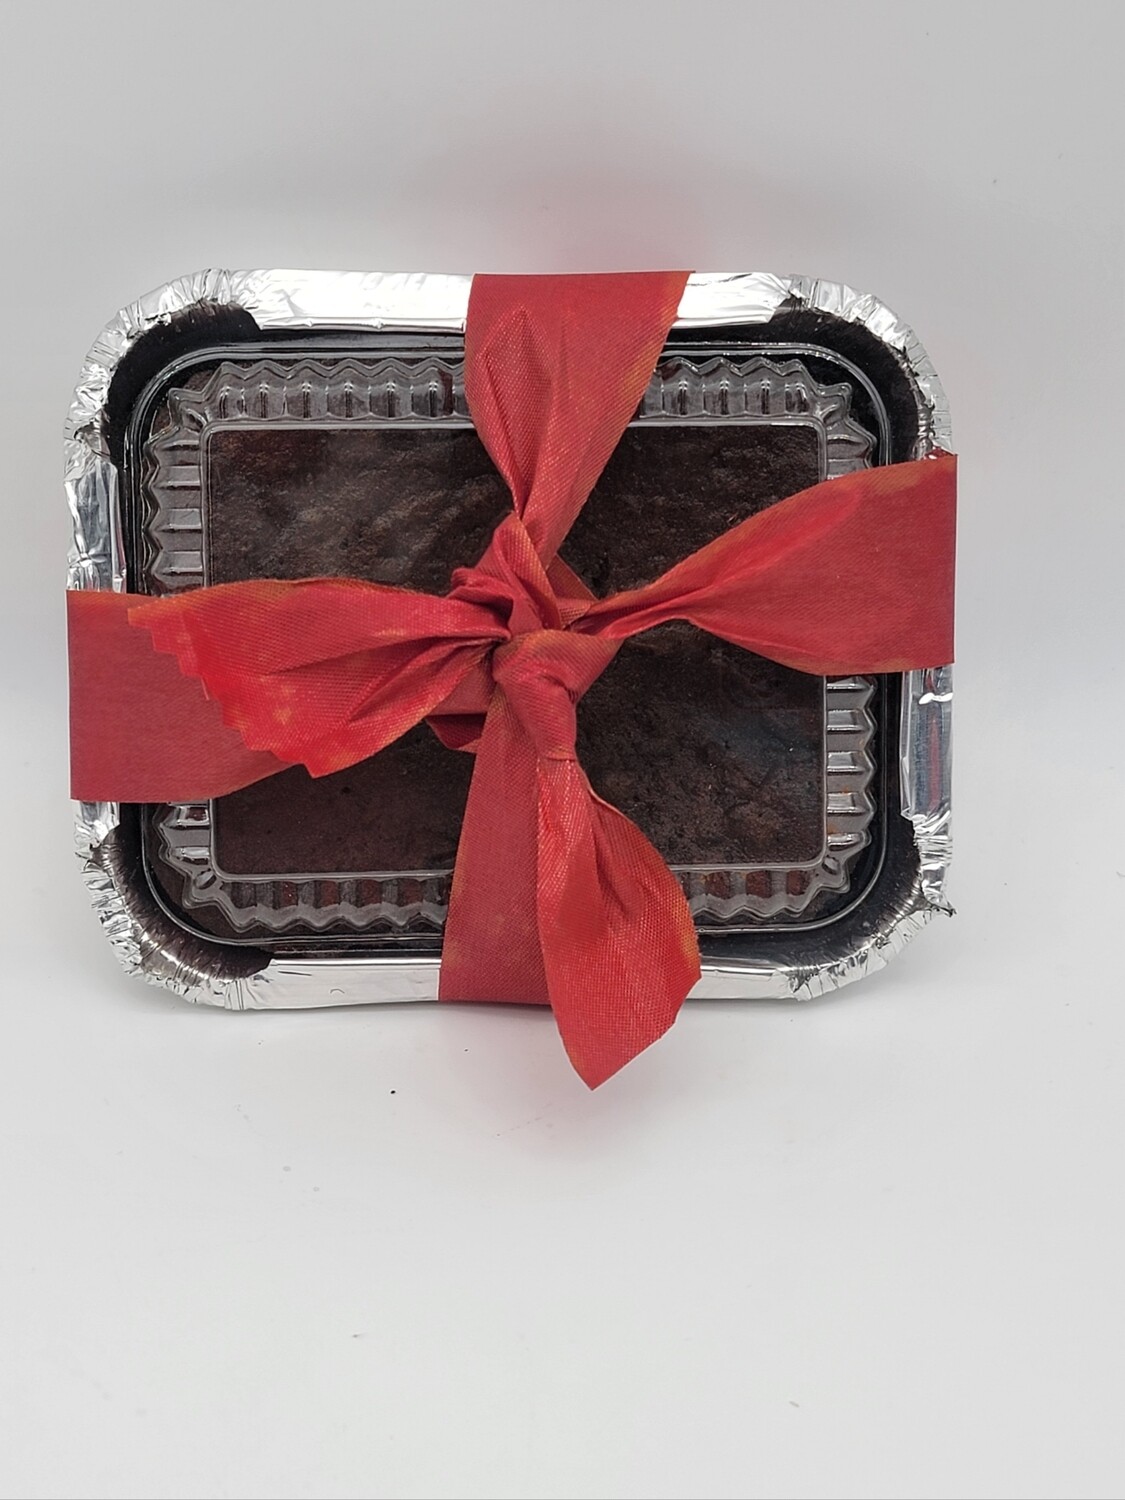 Bajan Christmas cake - 3 x 4 1/2